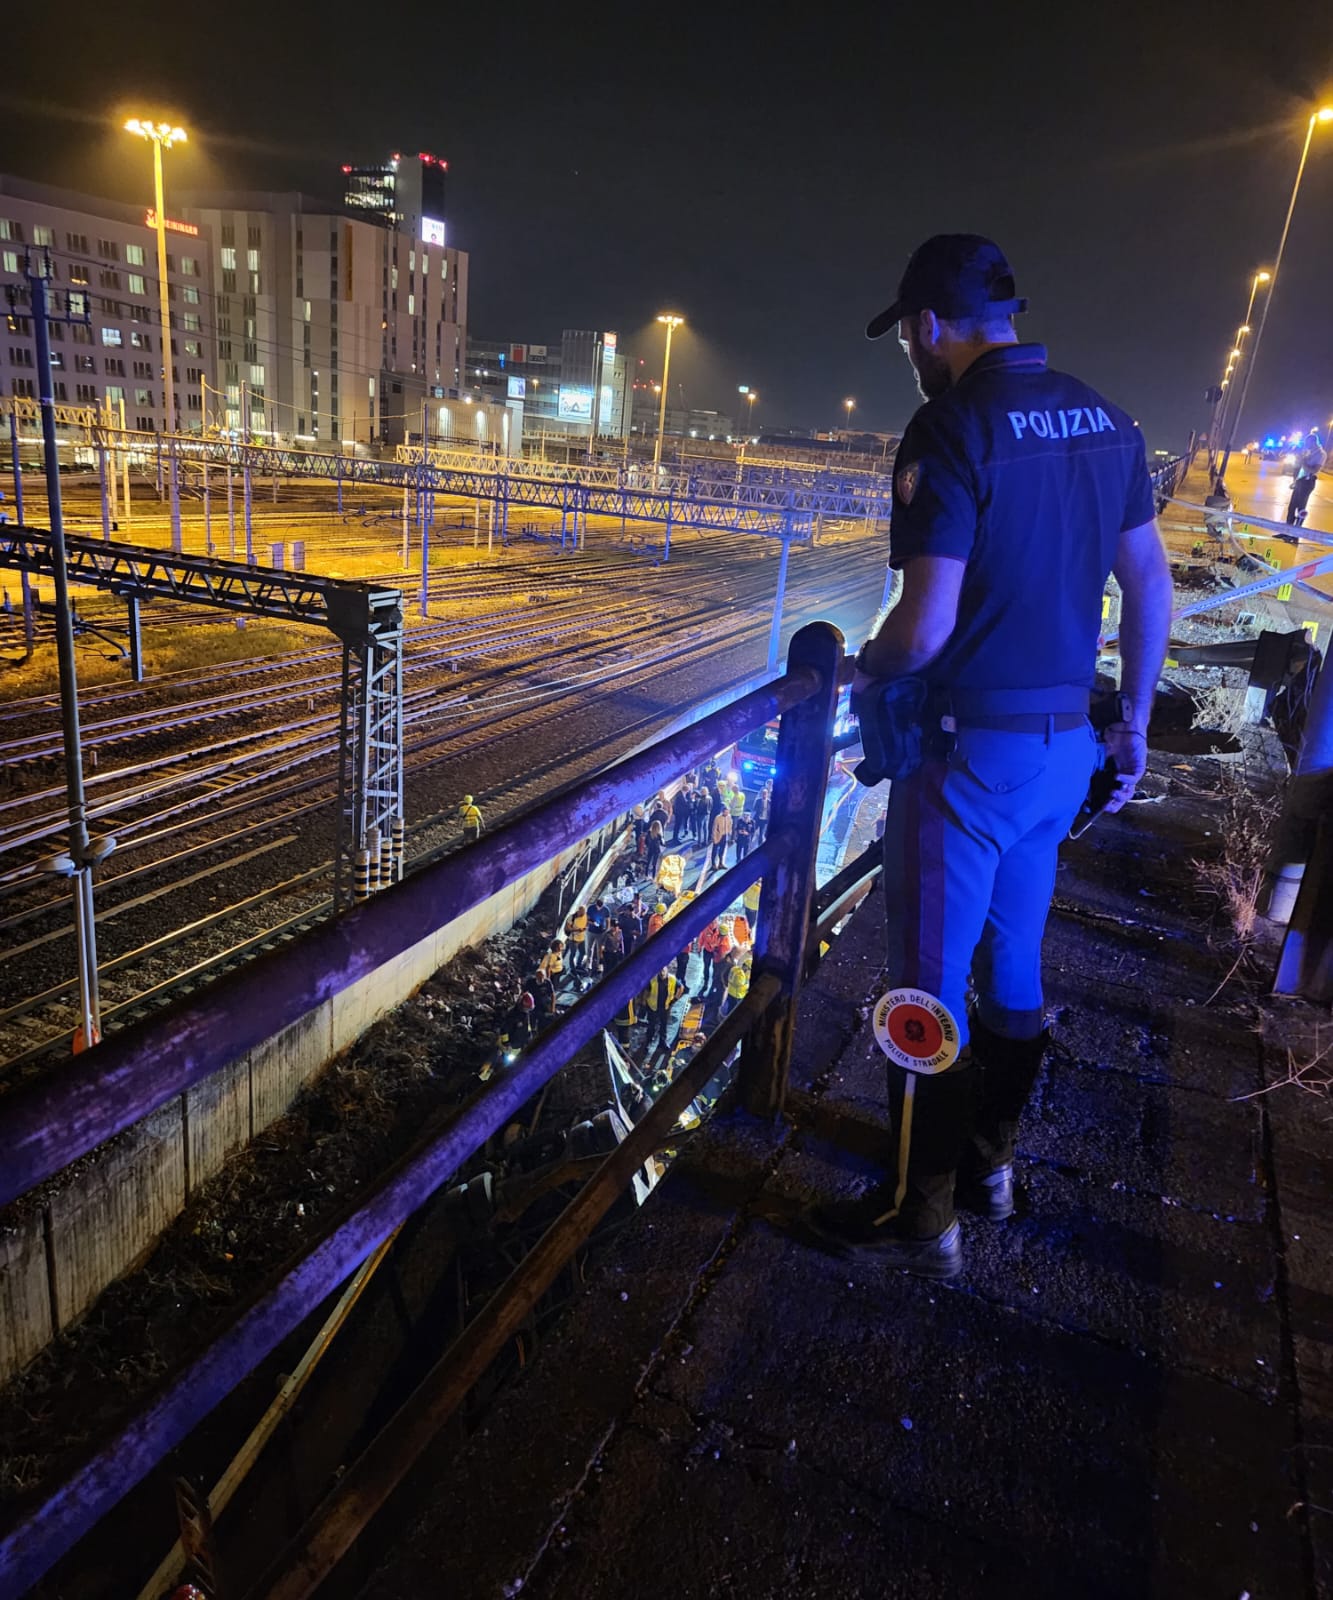 Туристический автобус упал с эстакады в Италии. Погиб 21 человек